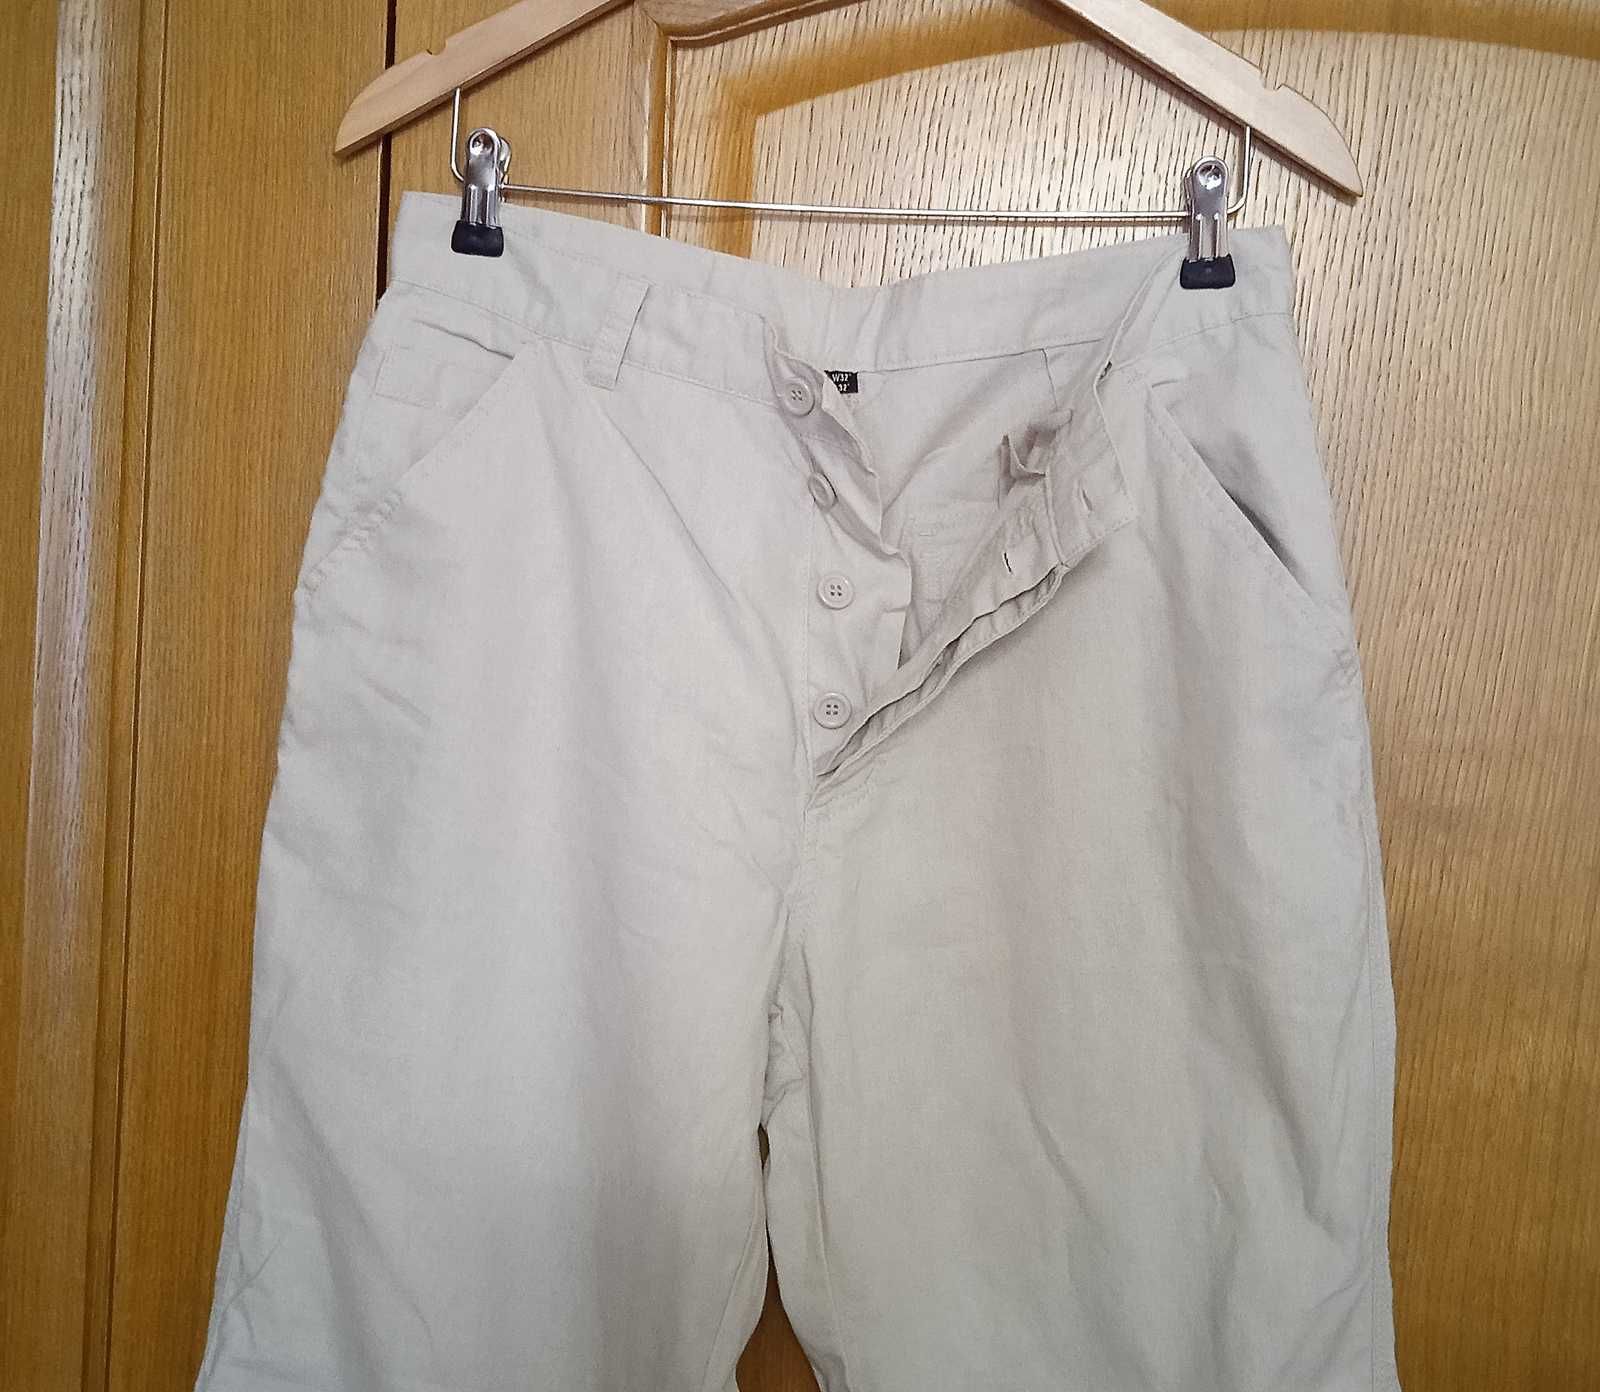 Летние брюки, Літні чоловічі штани Primark. Куплені в Англії. Нові